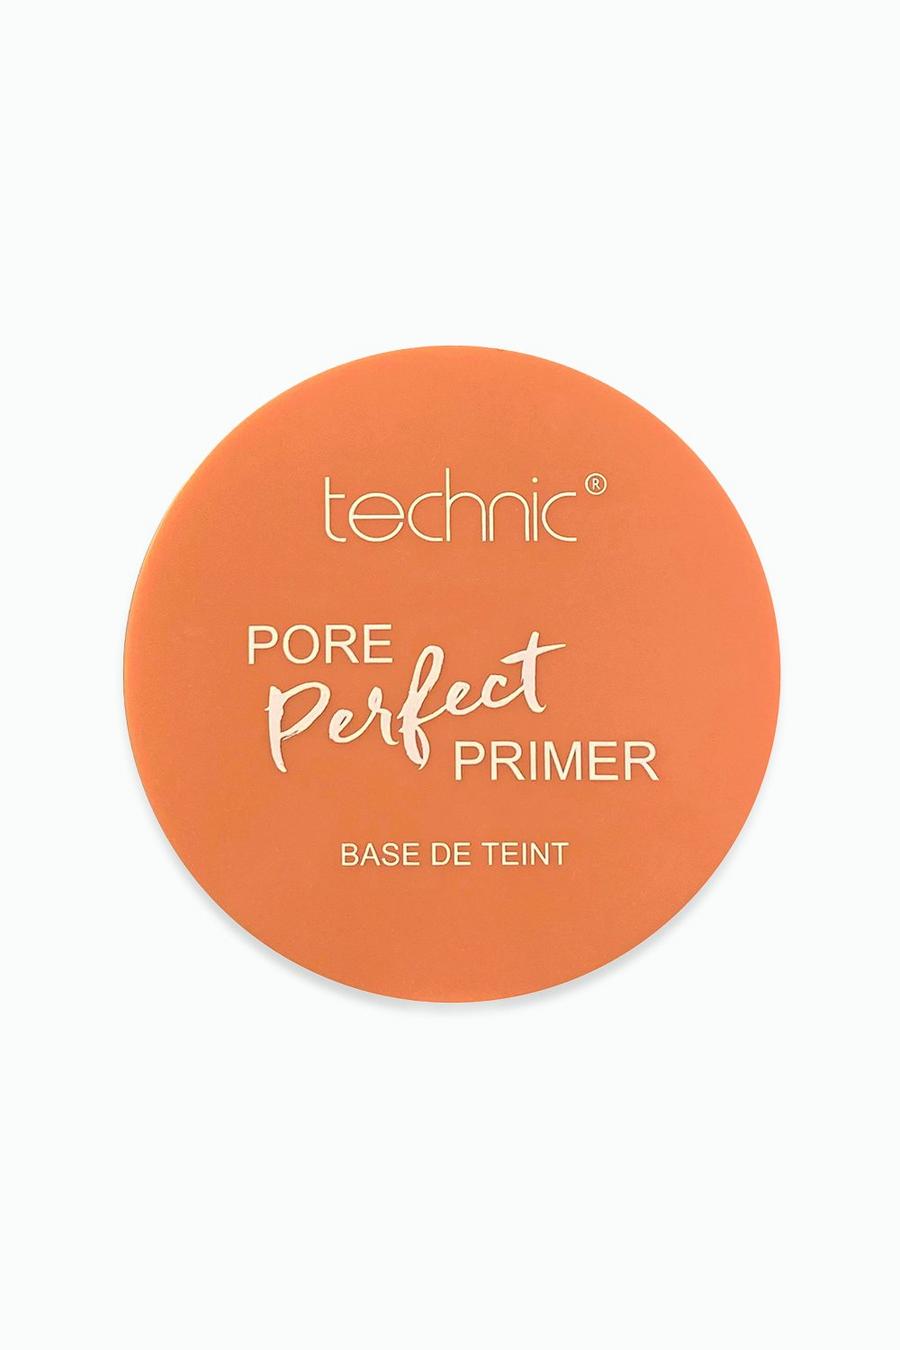 Technic - Primer perfezionante Pore Perfect, Orange naranja